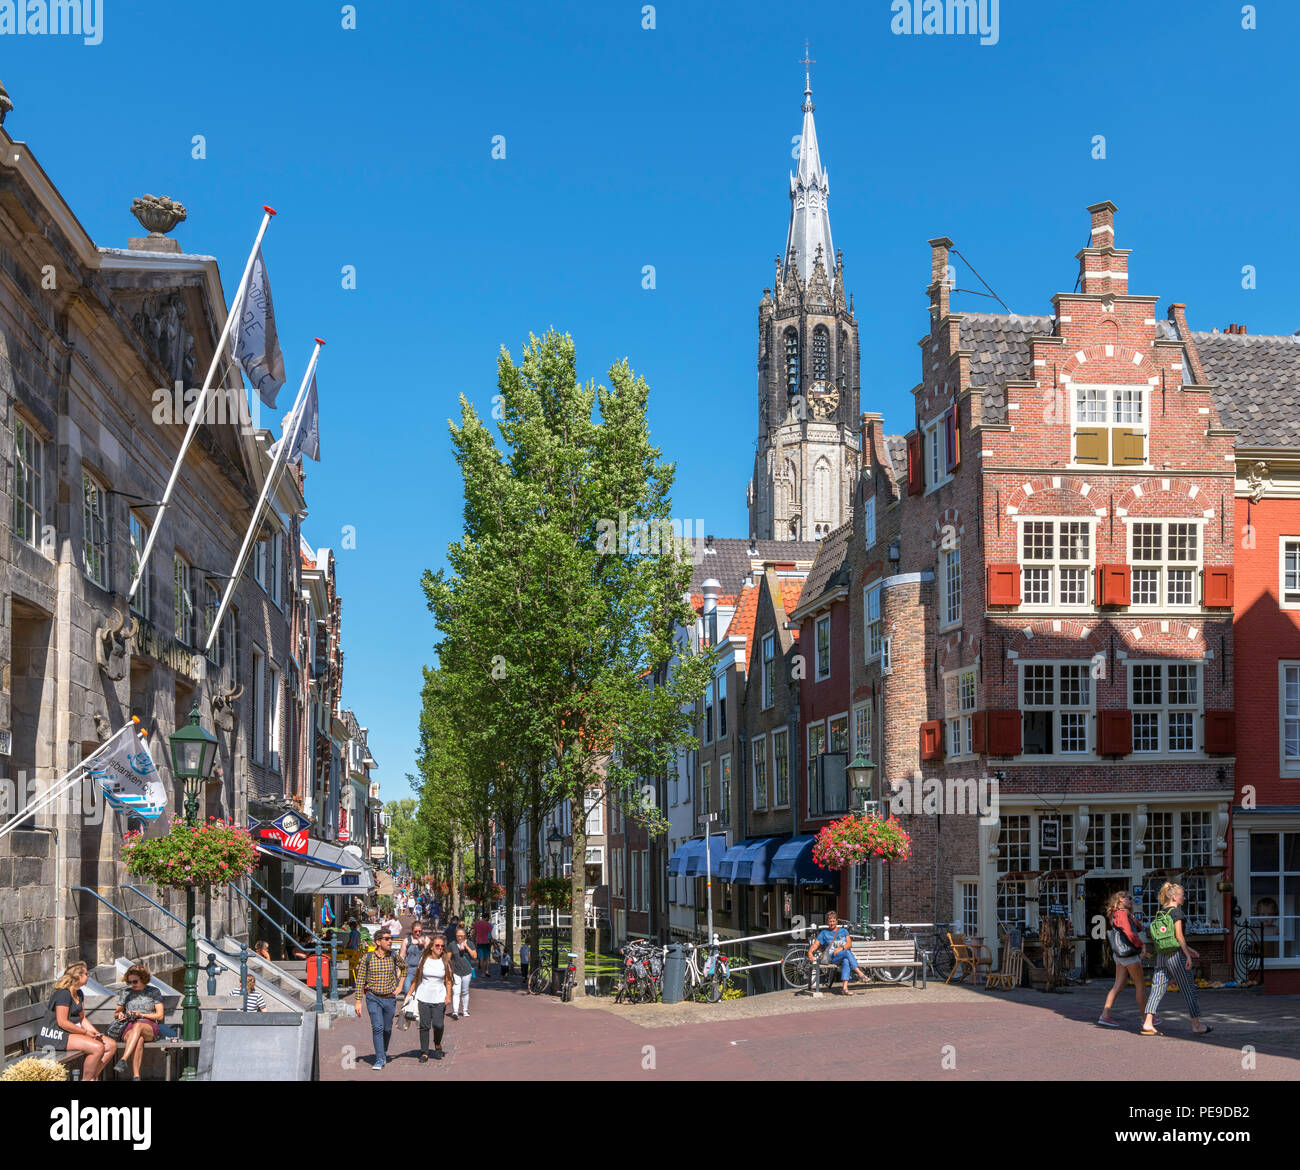 Delft Altstadt mit Blick auf die Spitze des Historischen des 15. Jahrhunderts Nieuwe Kerk (Neue Kirche), Voldersgracht, Delft, Groningen (Holland), Ne Stockfoto